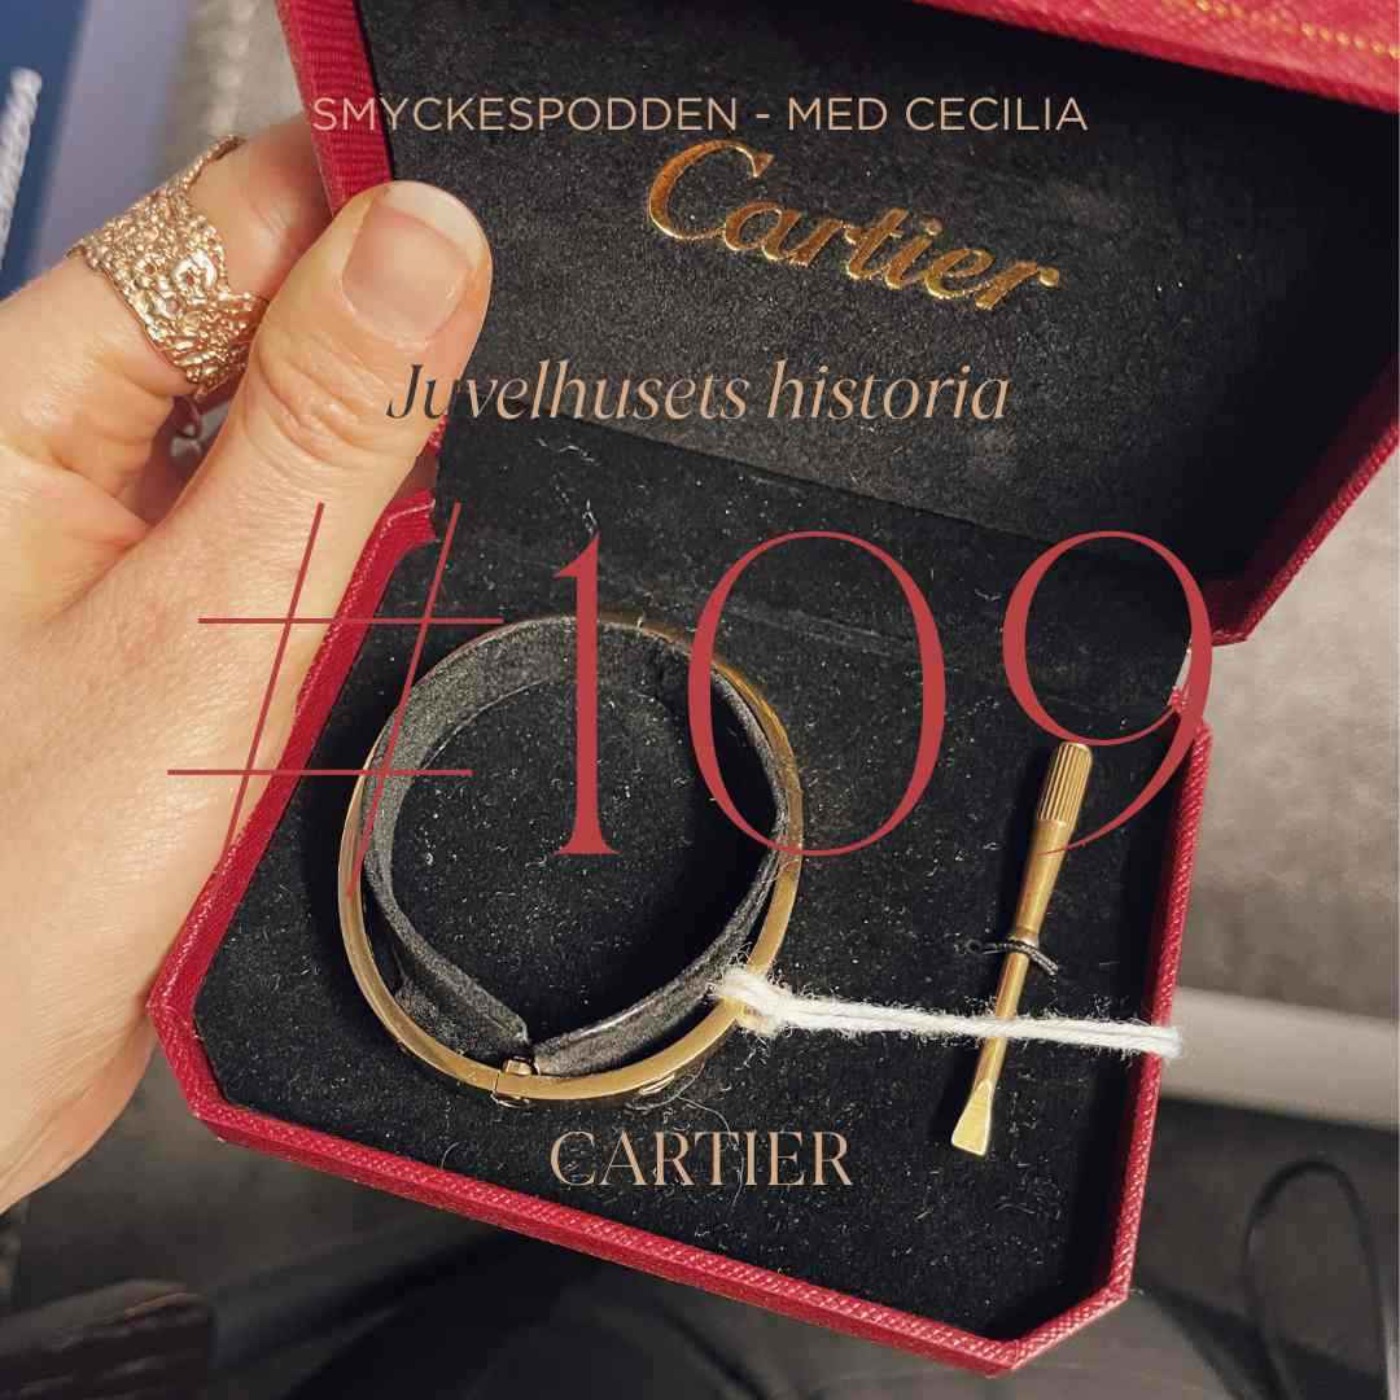 109. Cartier - juvelhusets historia